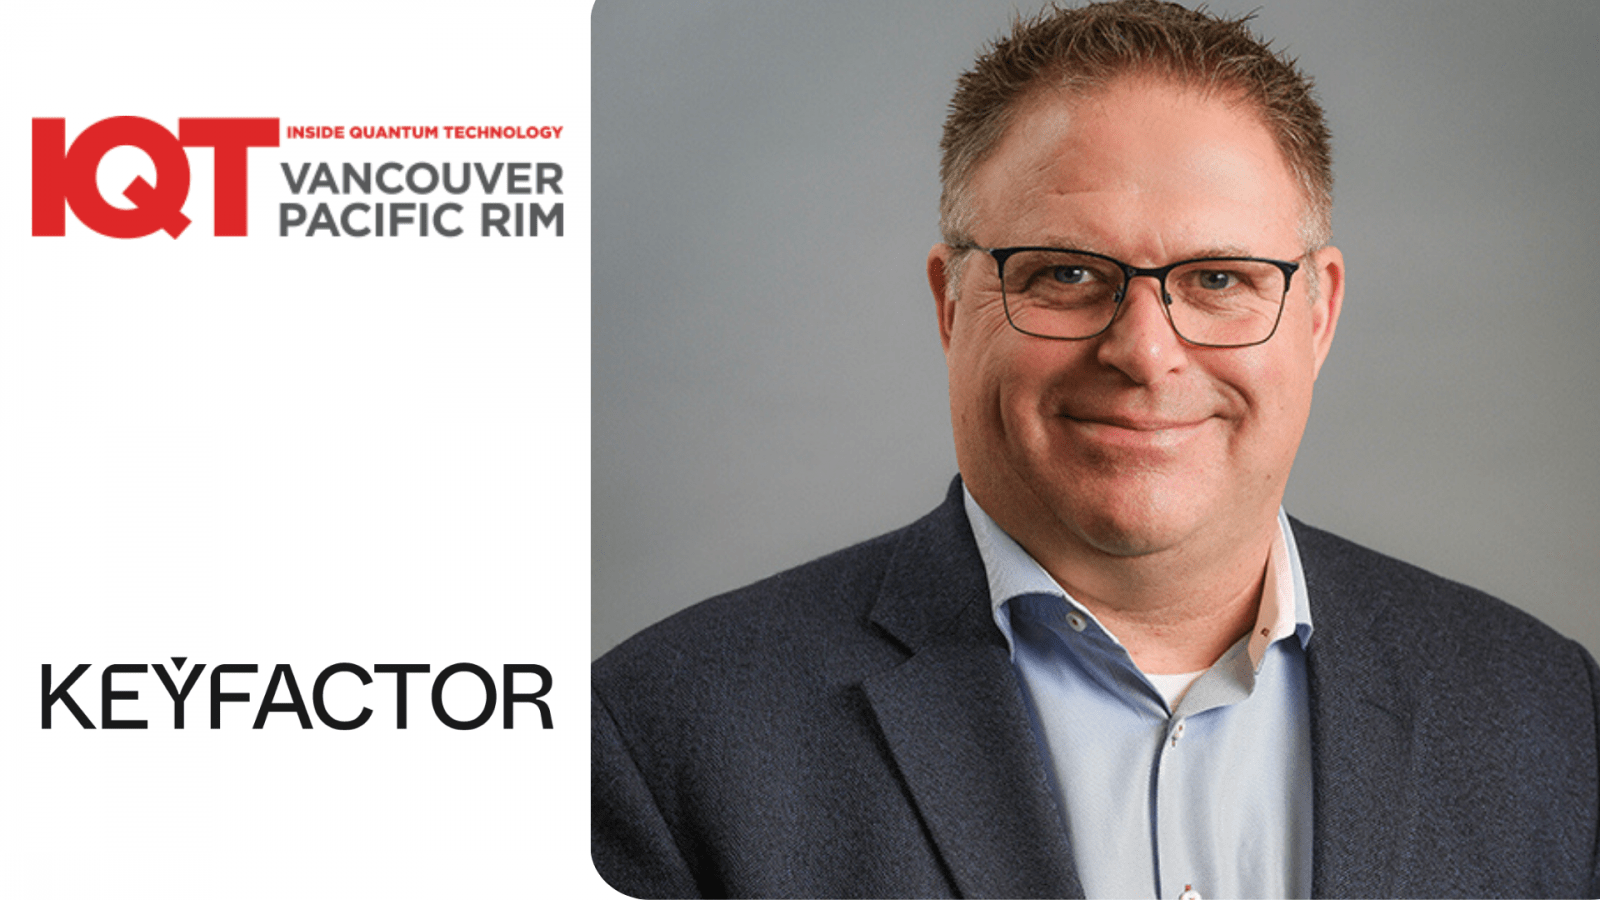 تحديث IQT Vancouver/Pacific Rim: كريس هيكمان، كبير مسؤولي الأمن في Keyfactor، هو متحدث لعام 2024 - داخل تكنولوجيا الكم